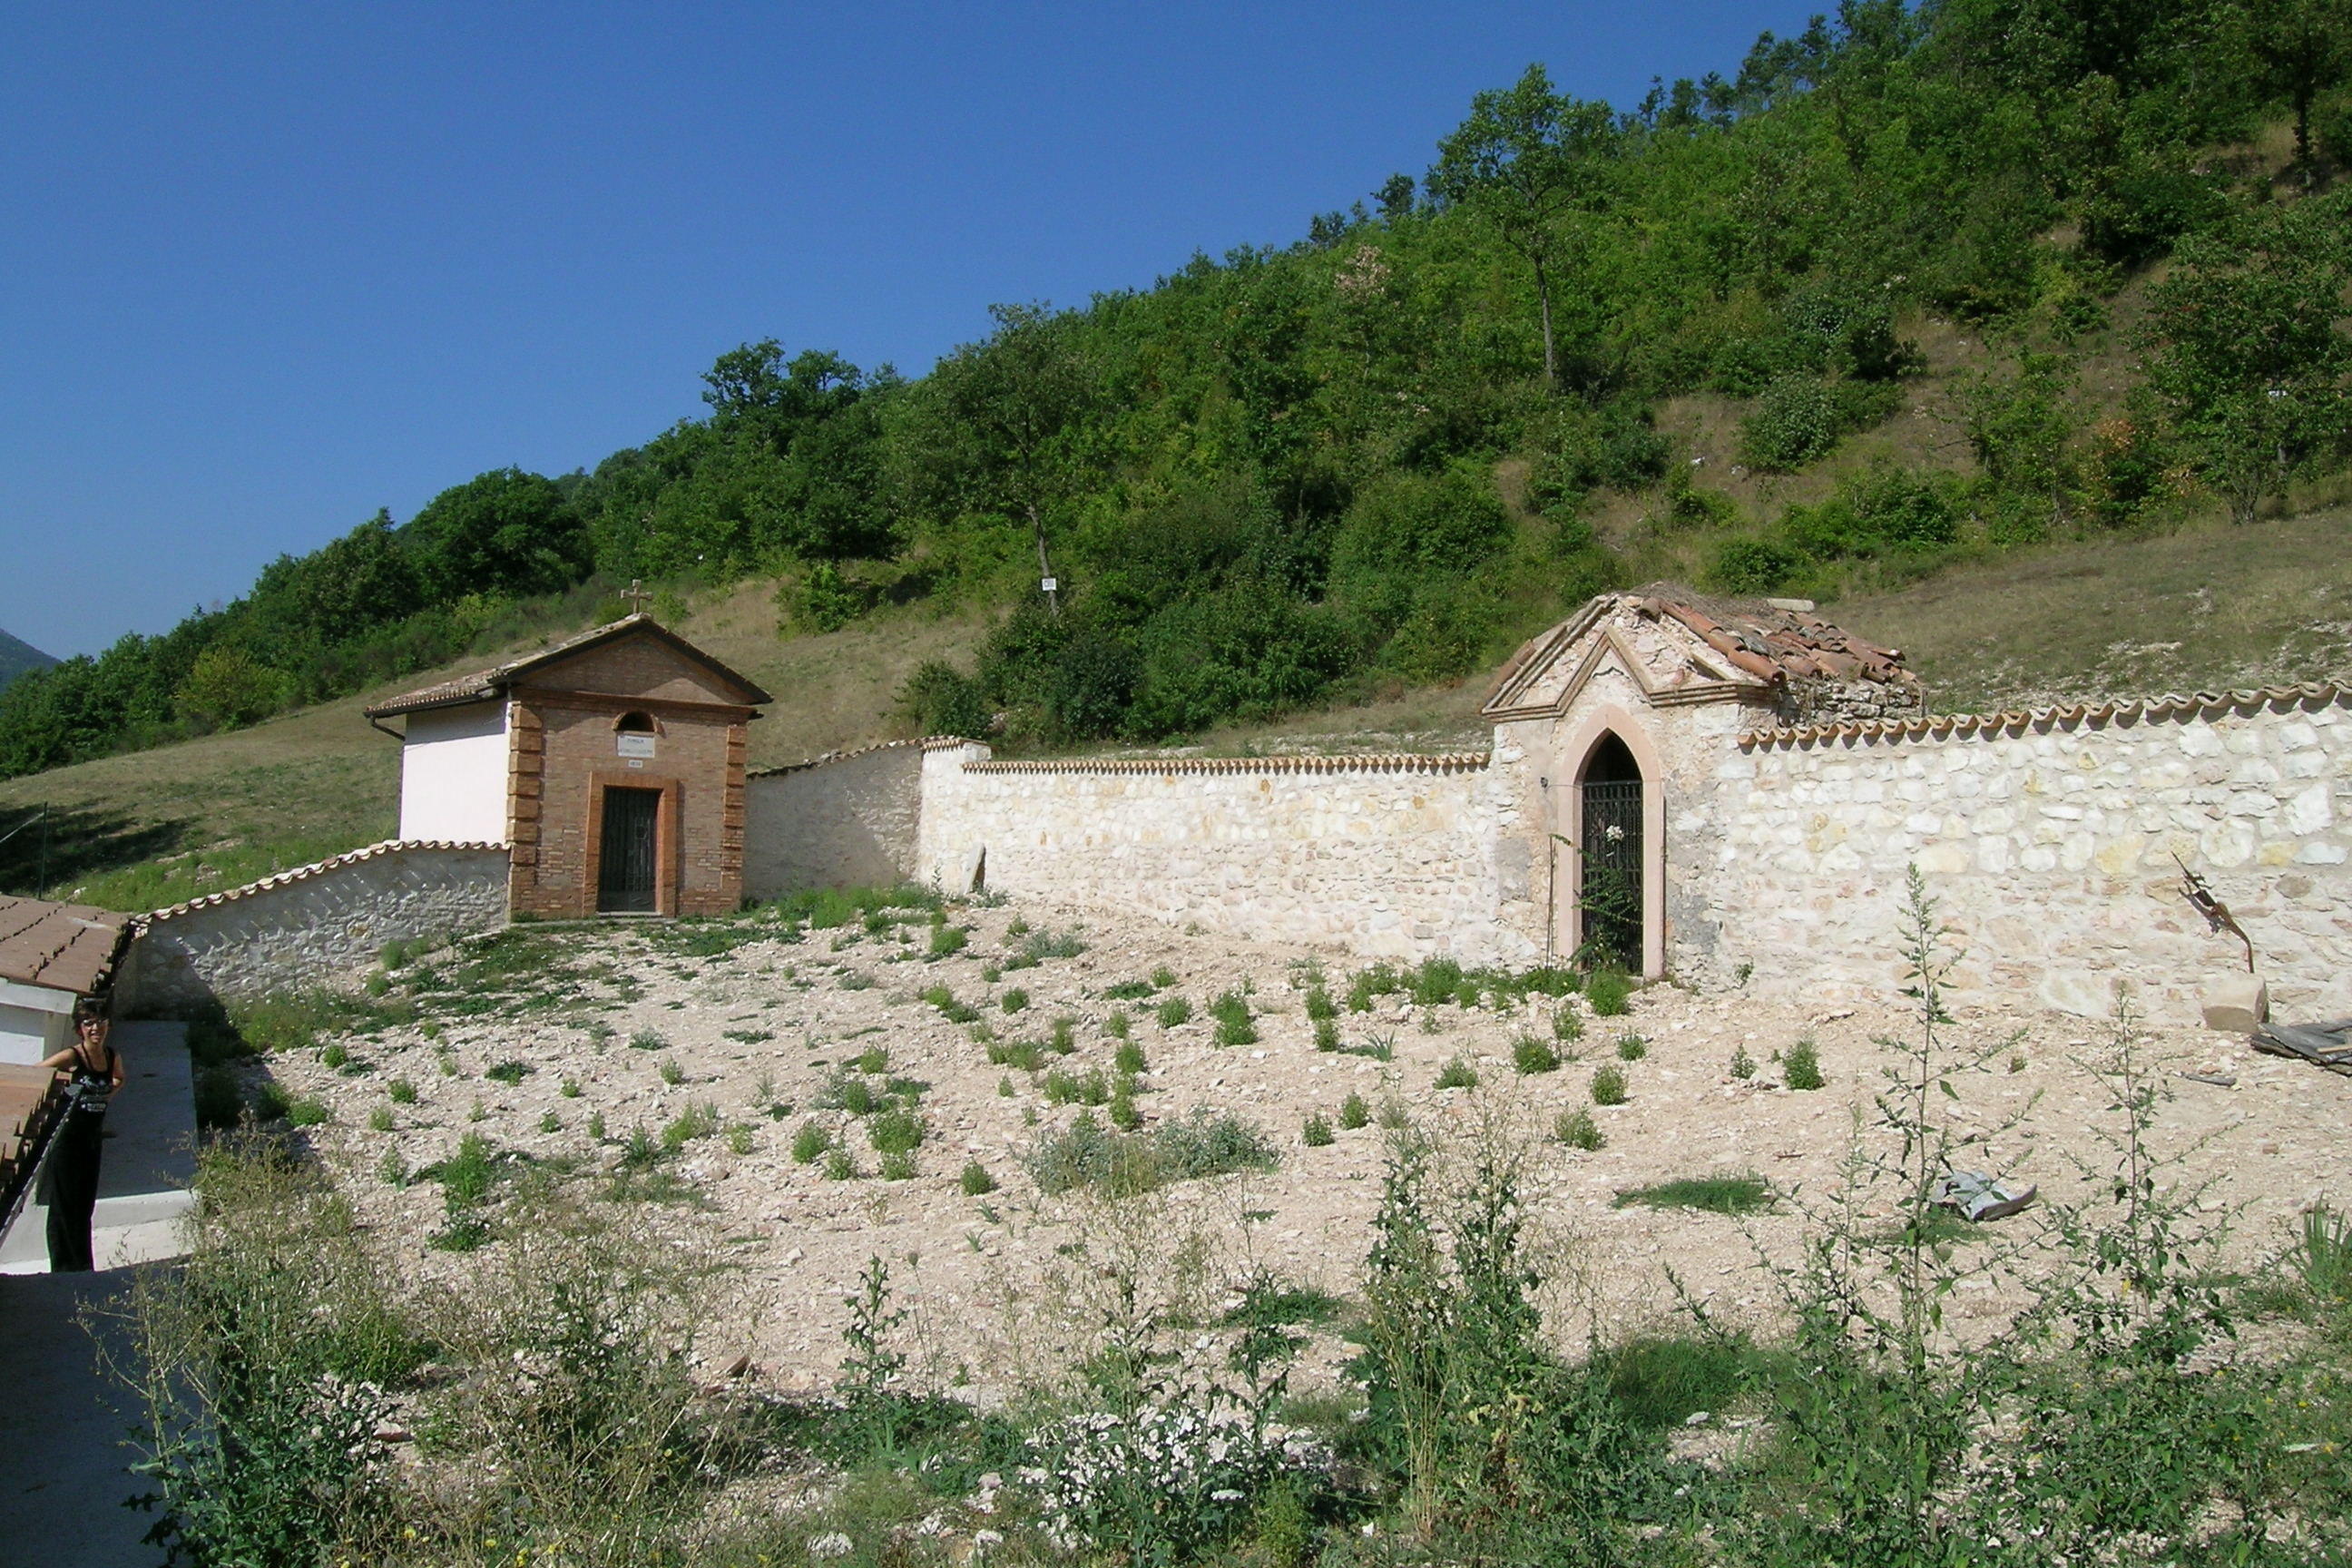 Cimitero di Fiume (cimitero, comunale) - Pieve Torina (MC) 